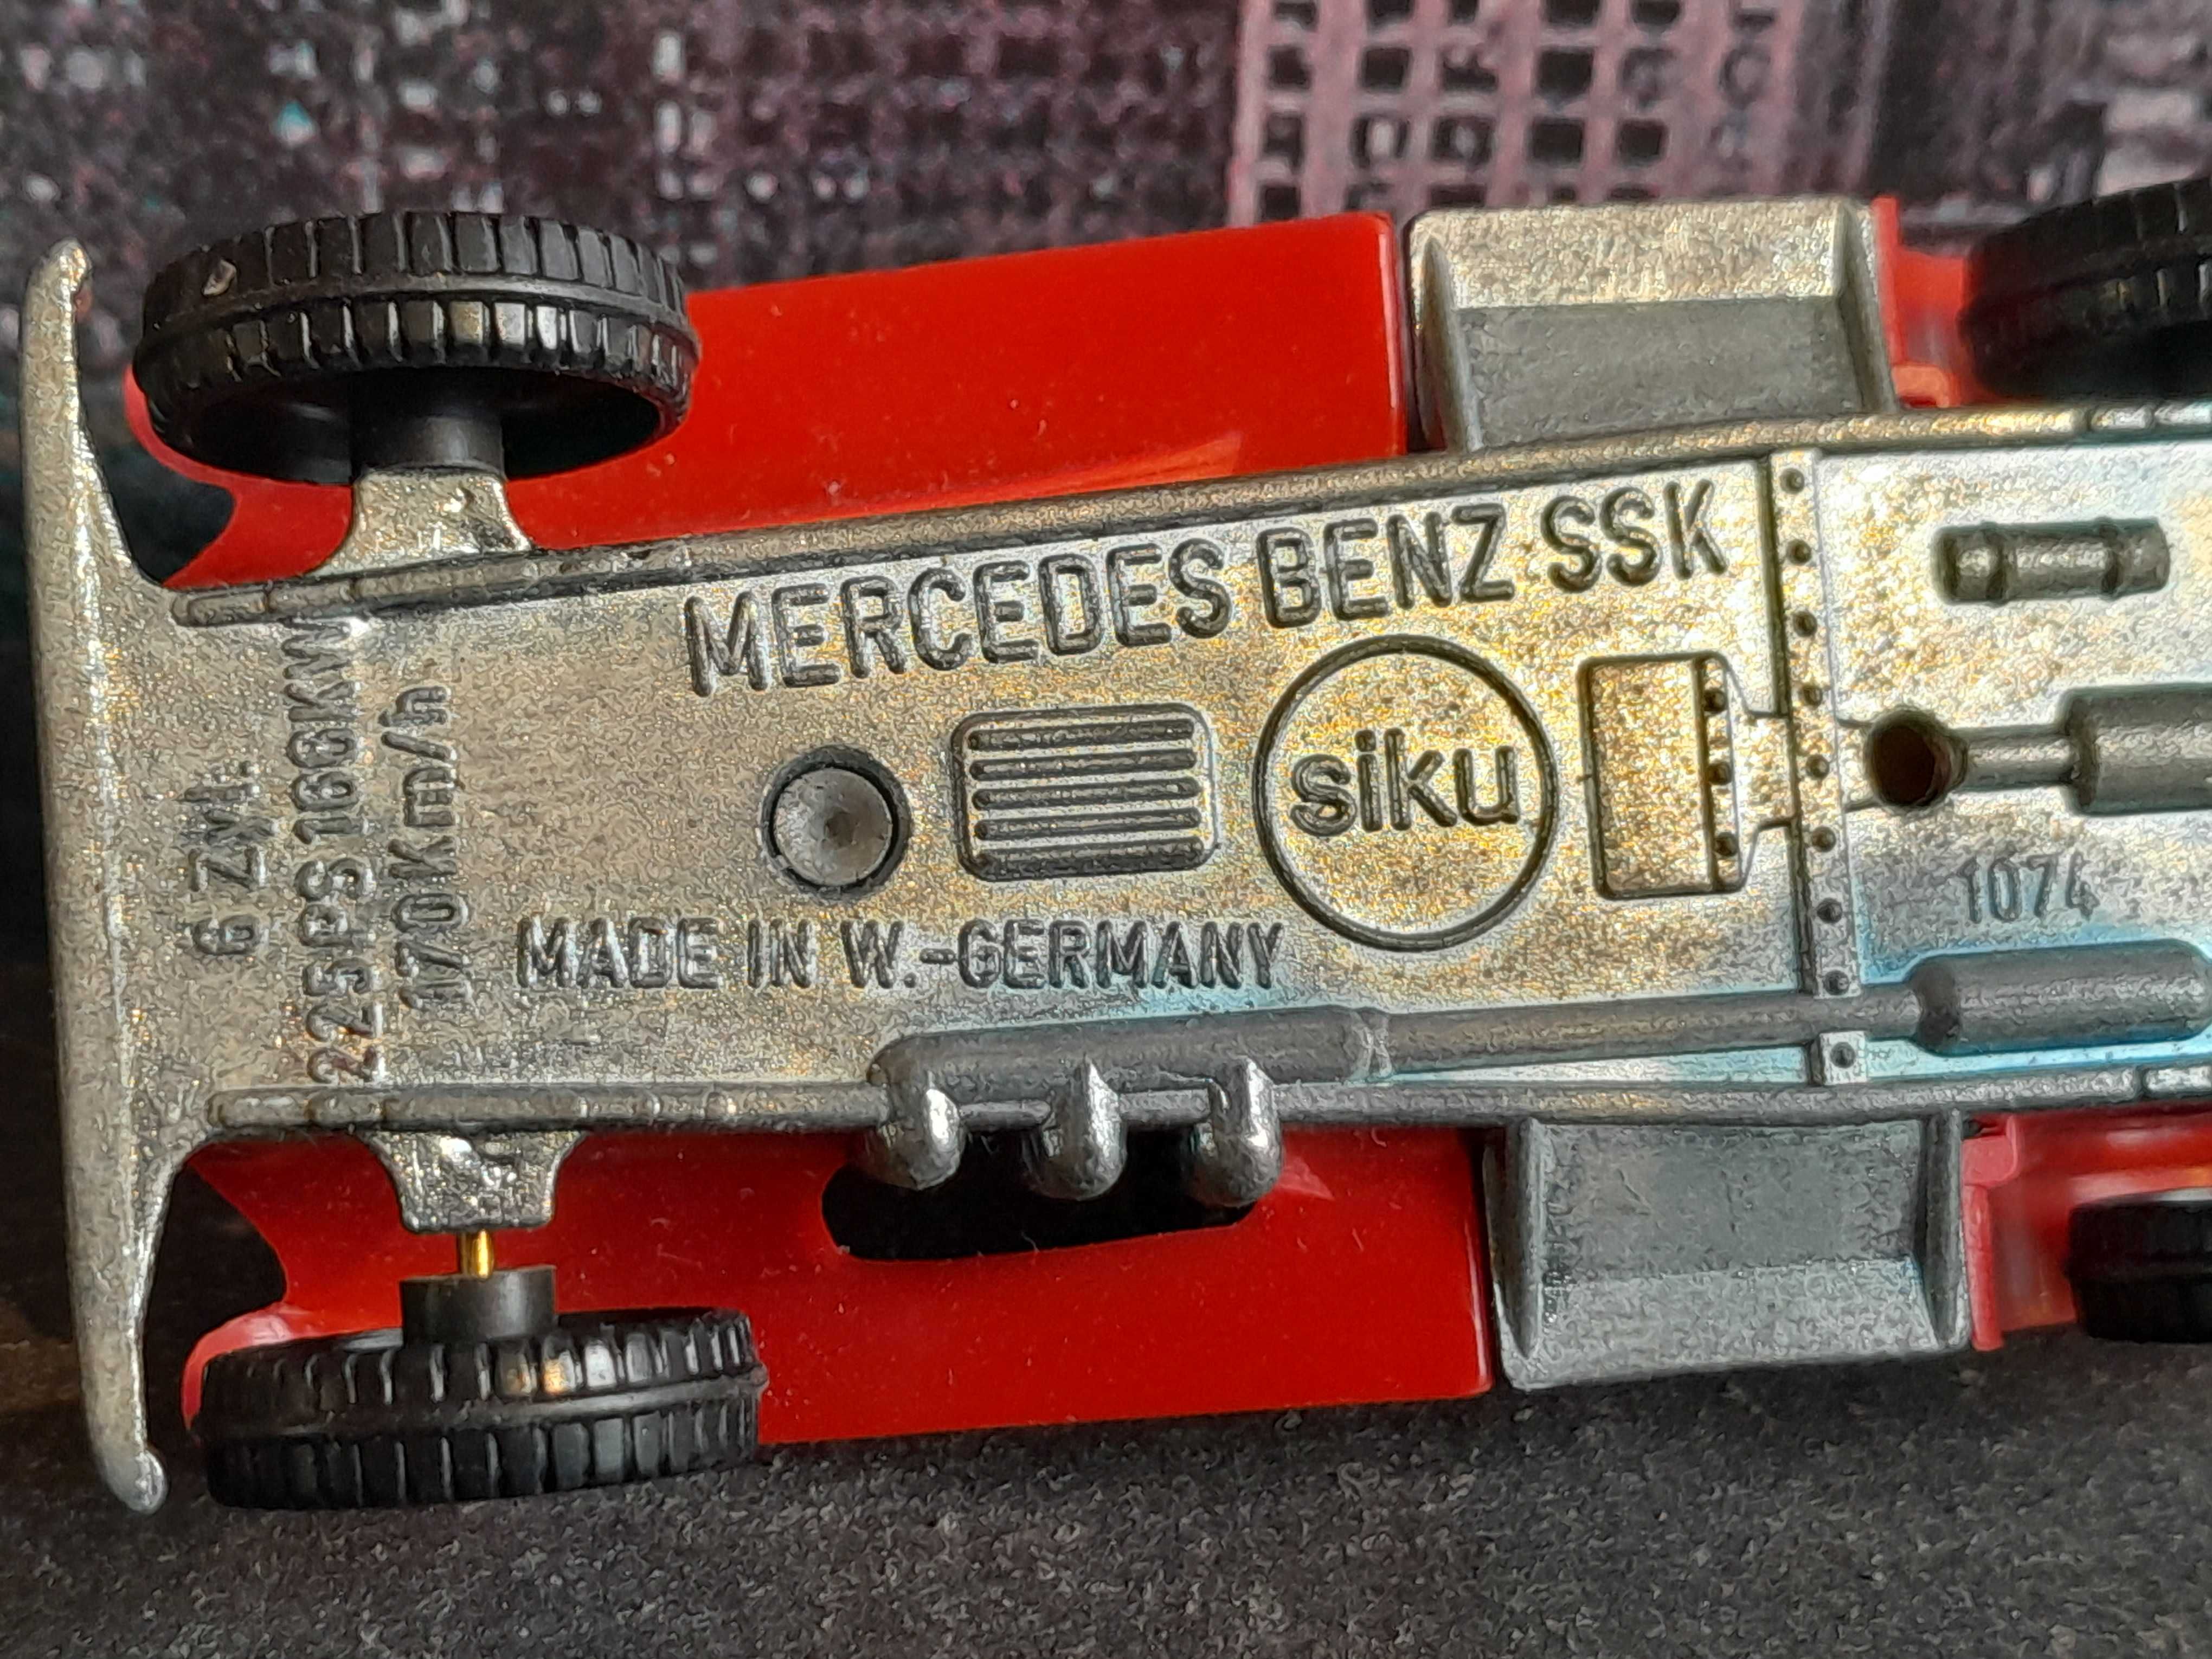 Stary resorak SIKU 1074 Mercedes SSK do kolekcji lub na części